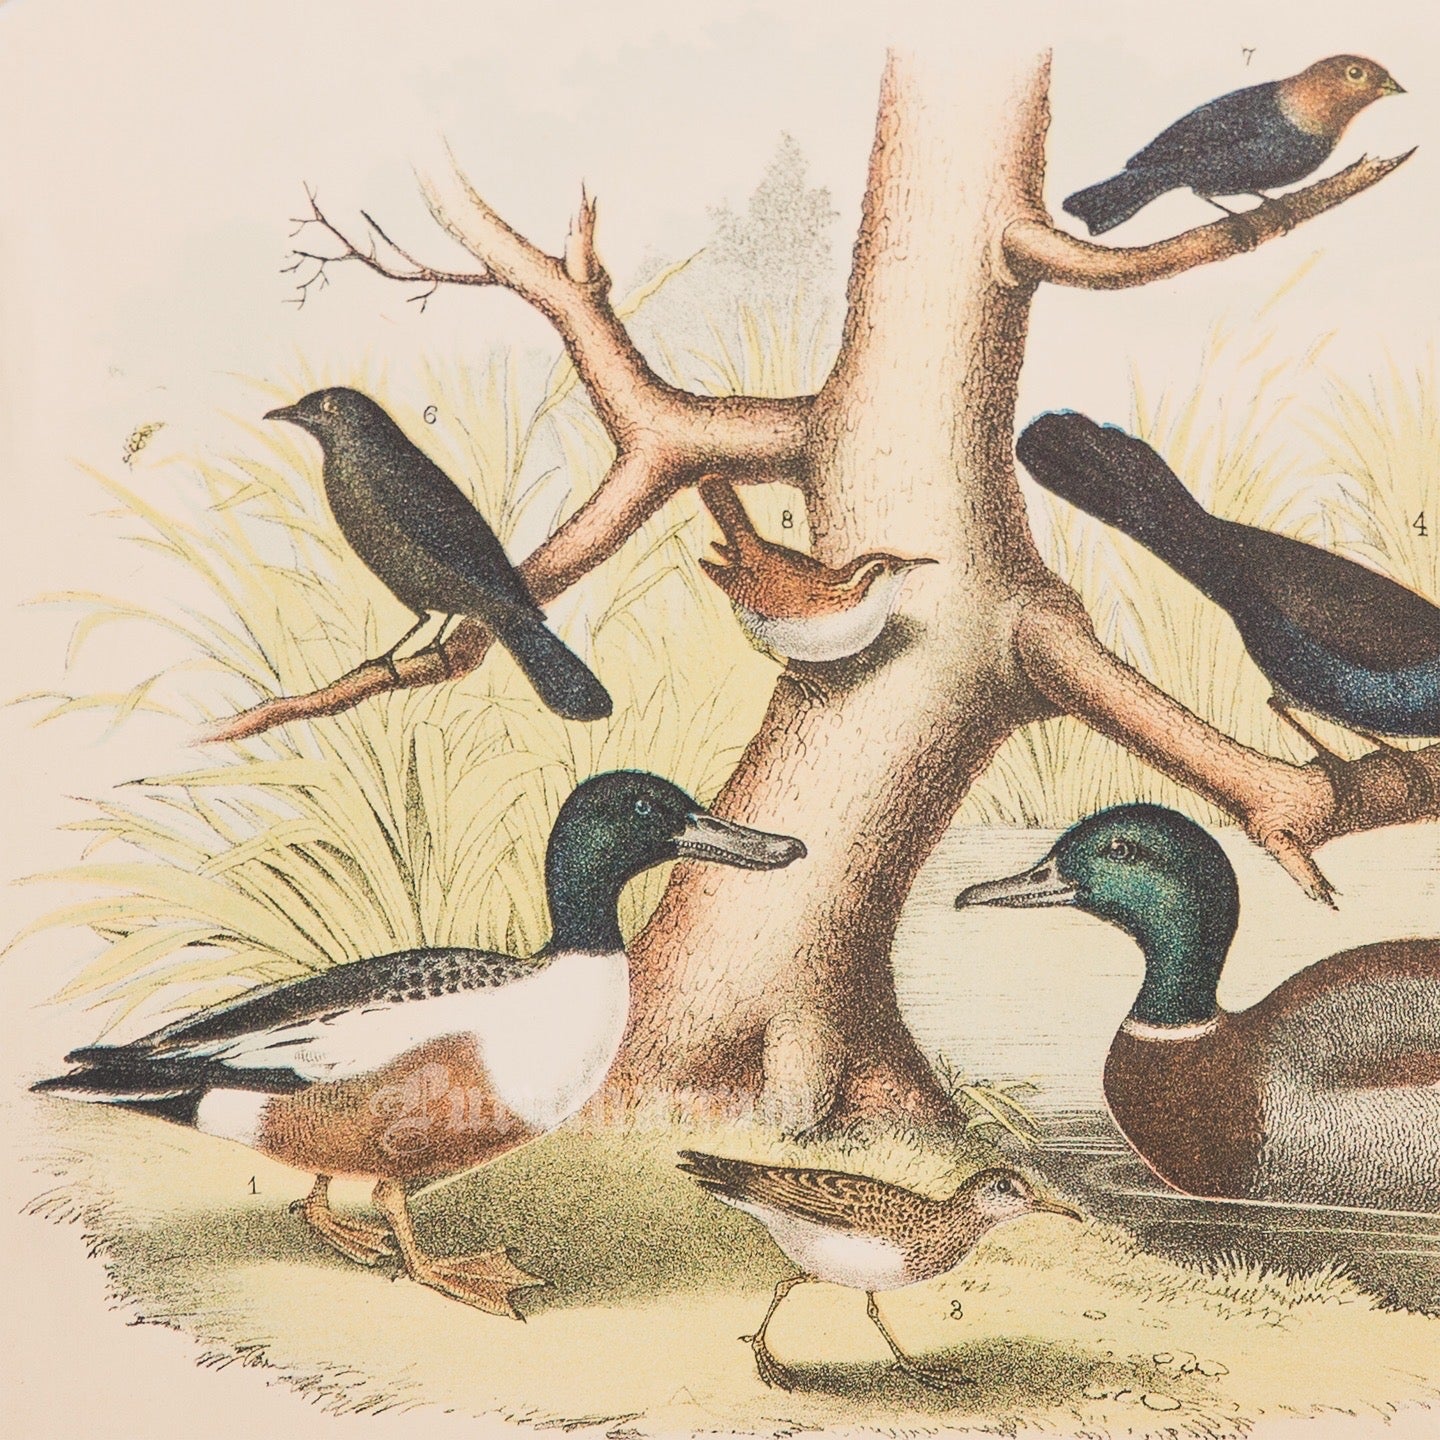 Bird - Chromo lithograph print (Plate - LII) by Theodore Jasper -  Bird Art / Avian Art